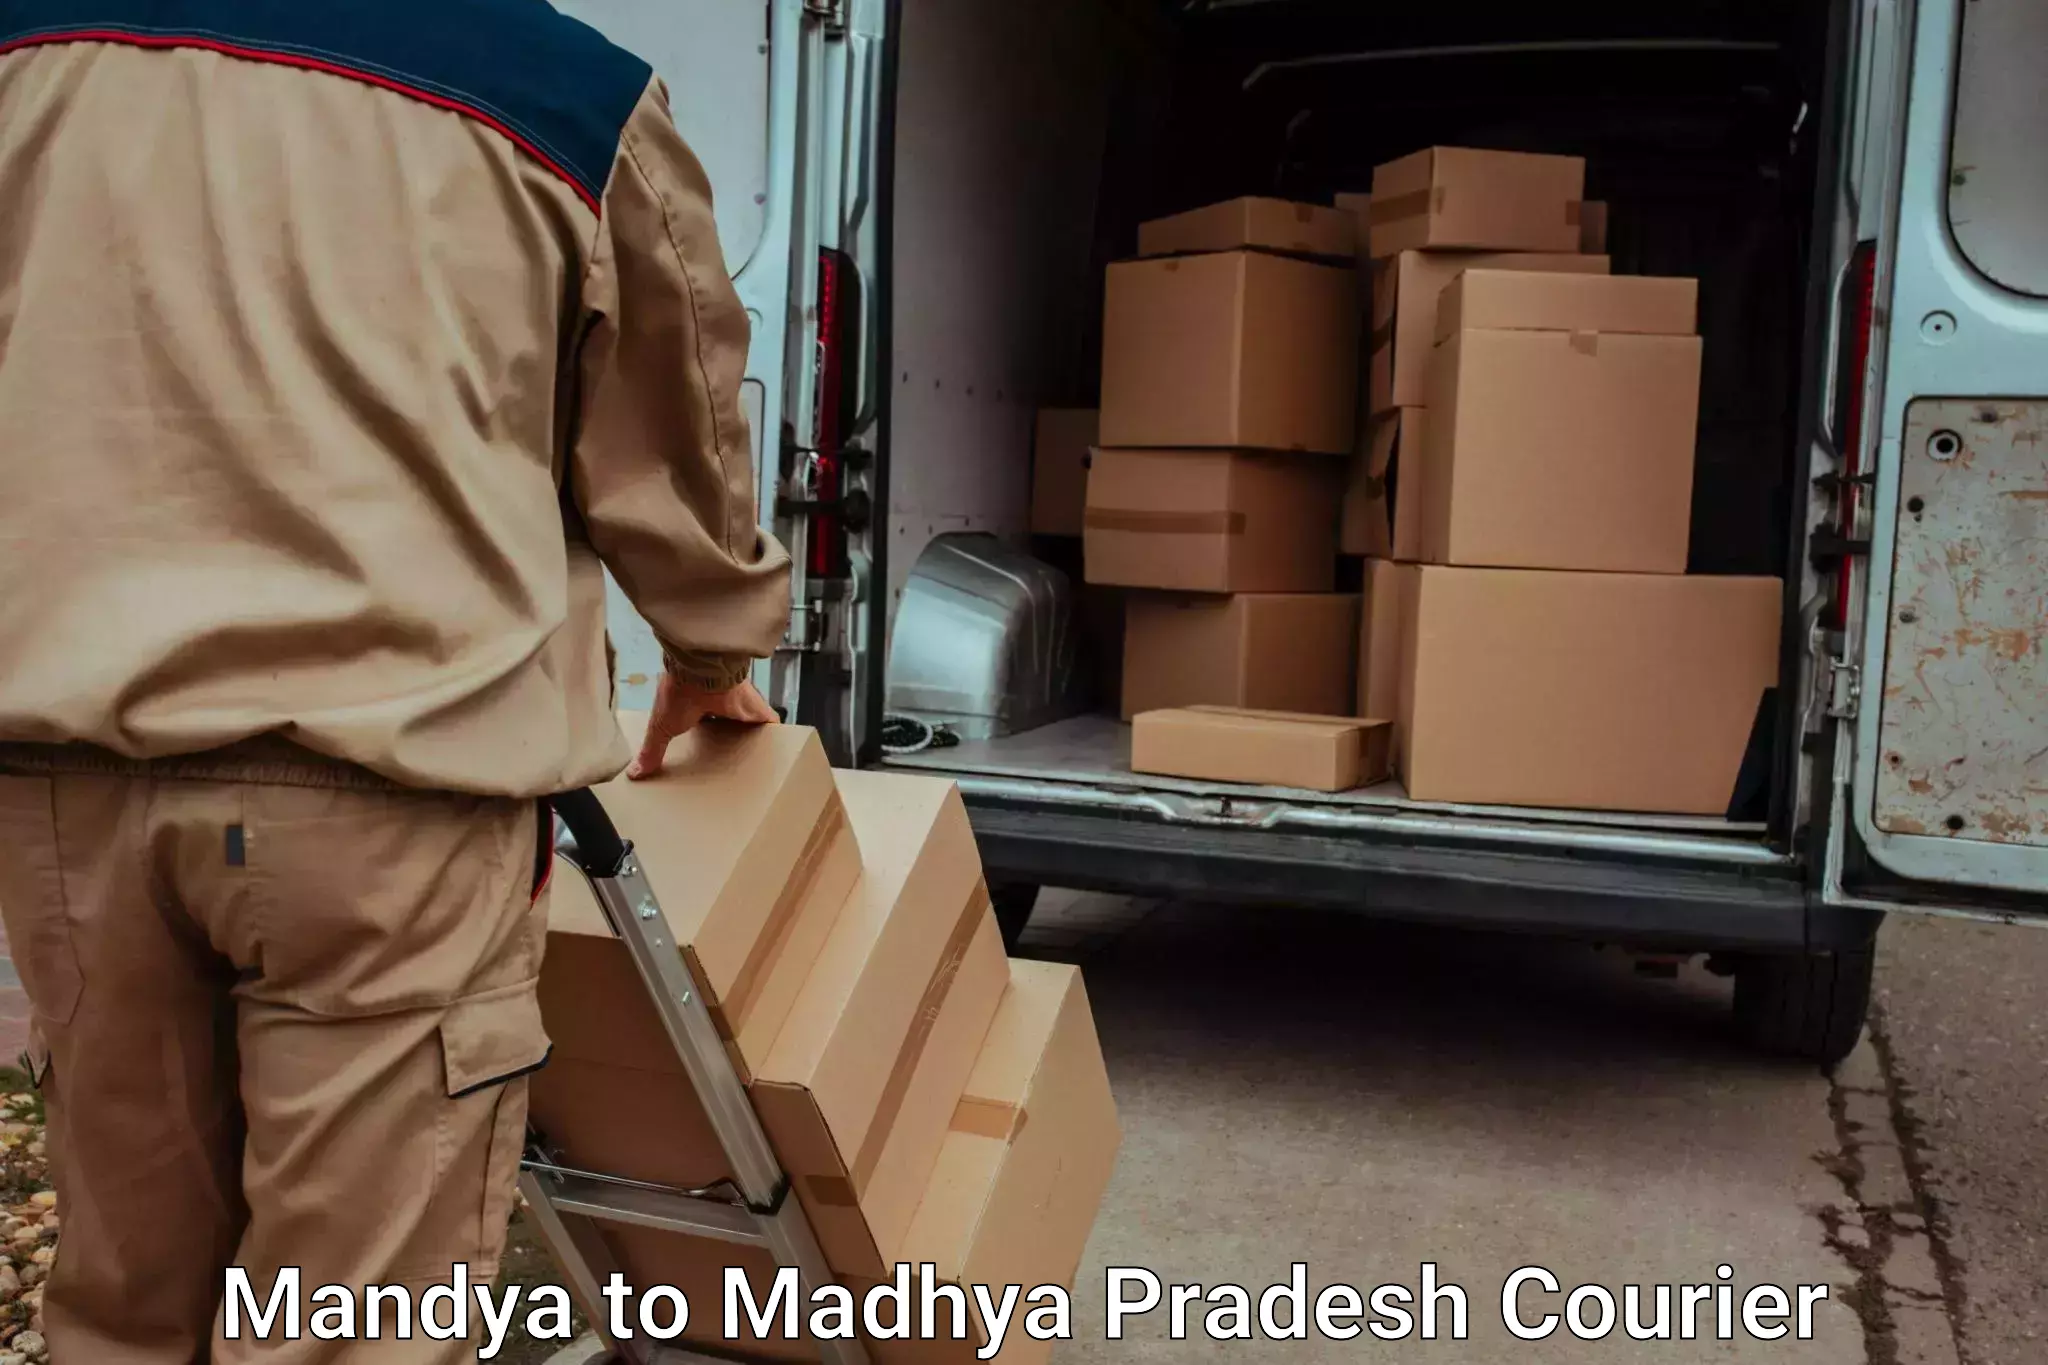 Luggage delivery network Mandya to Mandideep